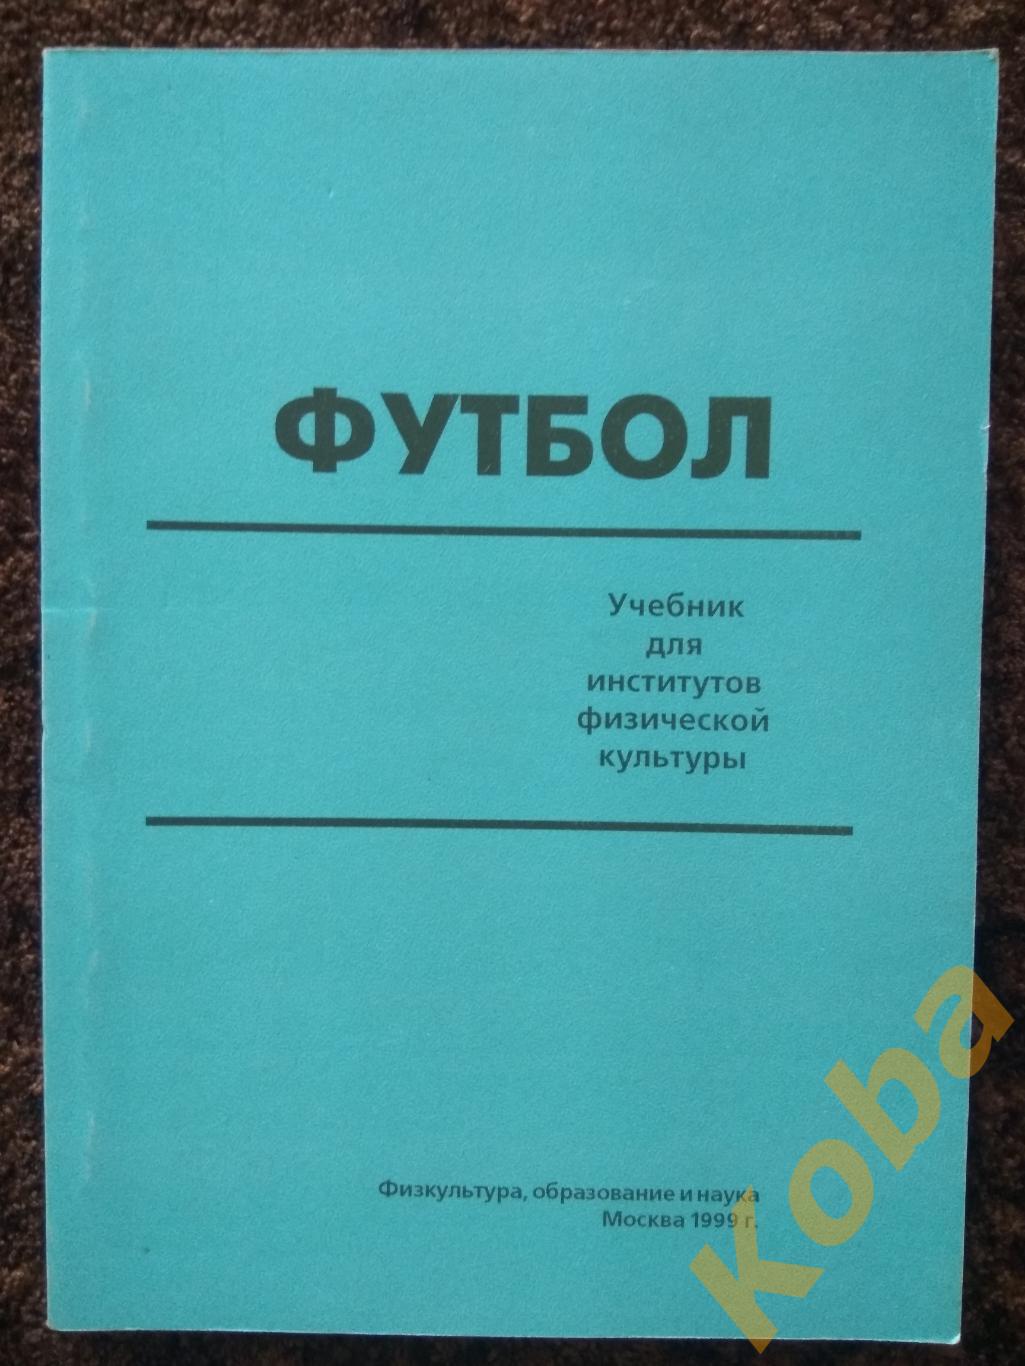 Футбол учебник для институтов физической культуры Полишкис Выжгин 1999